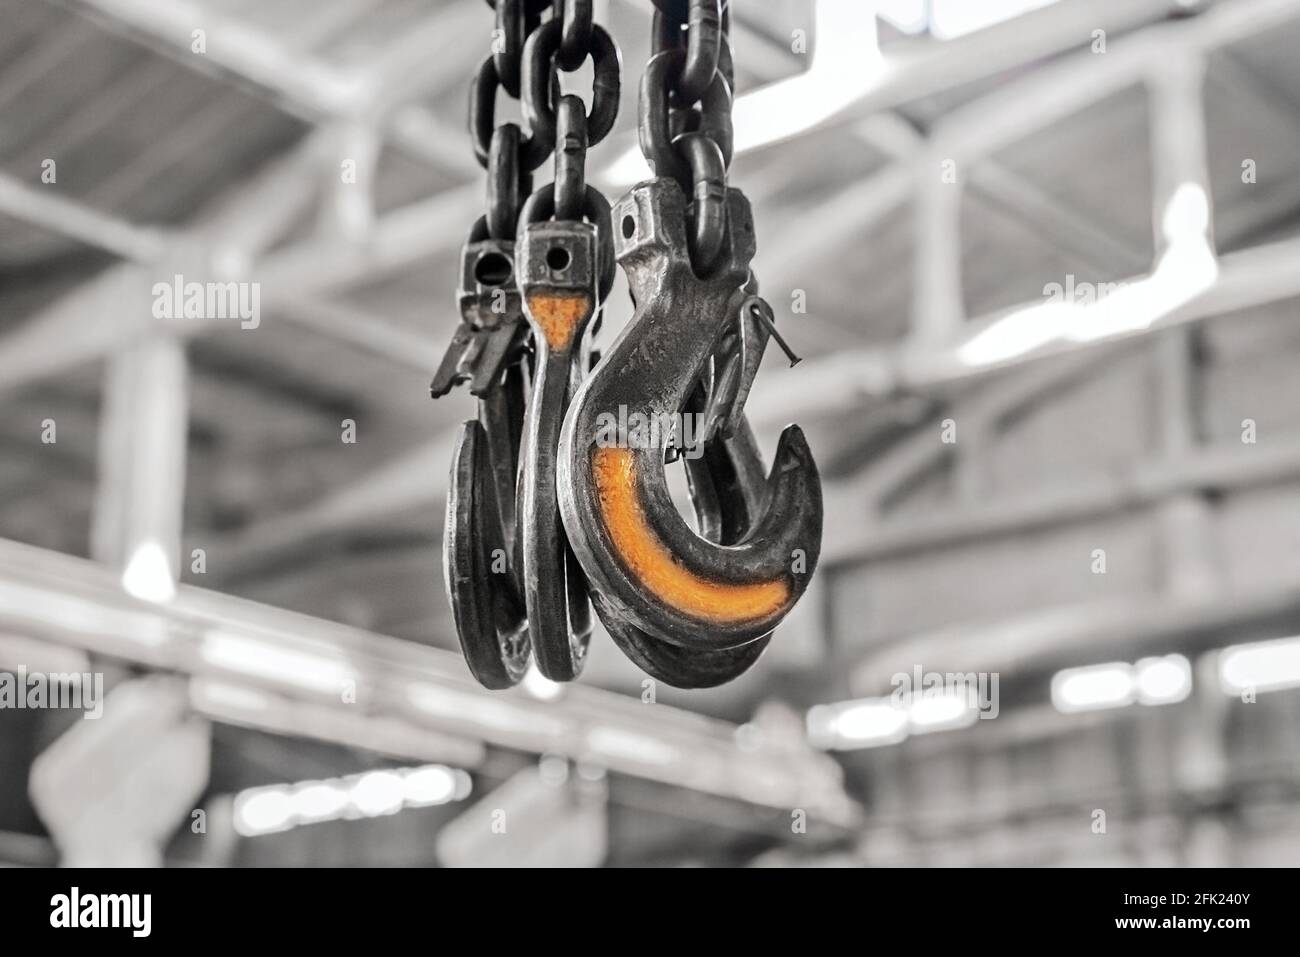 Meccanismo di sollevamento catena di ferro impianto industriale con gancio di sollevamento. Foto Stock